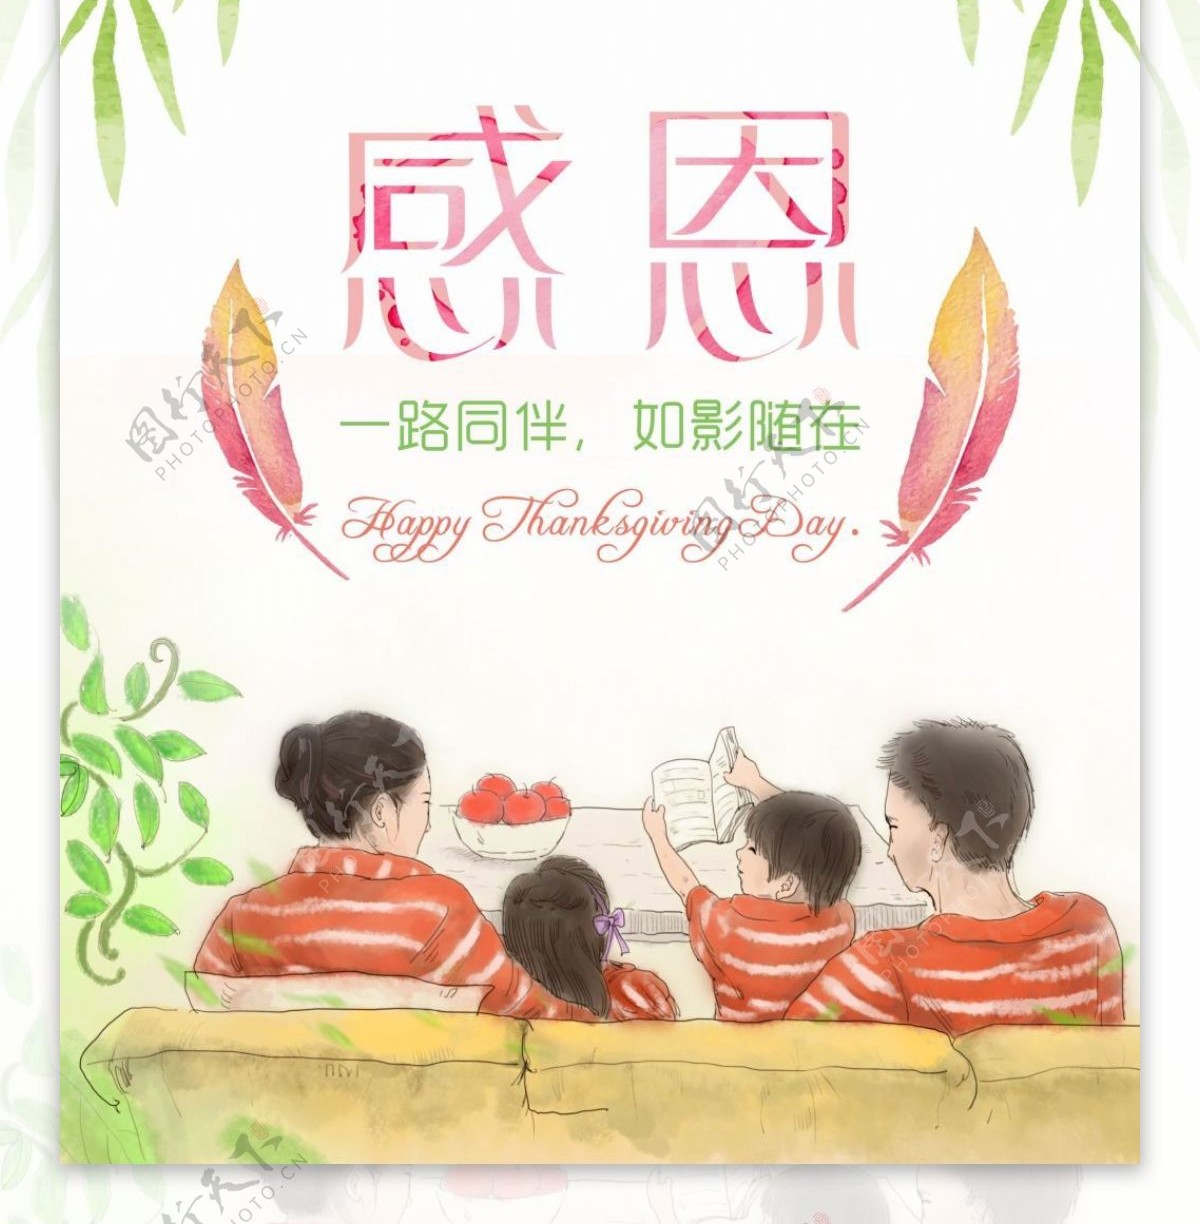 简洁卡通清新感恩节宣传海报